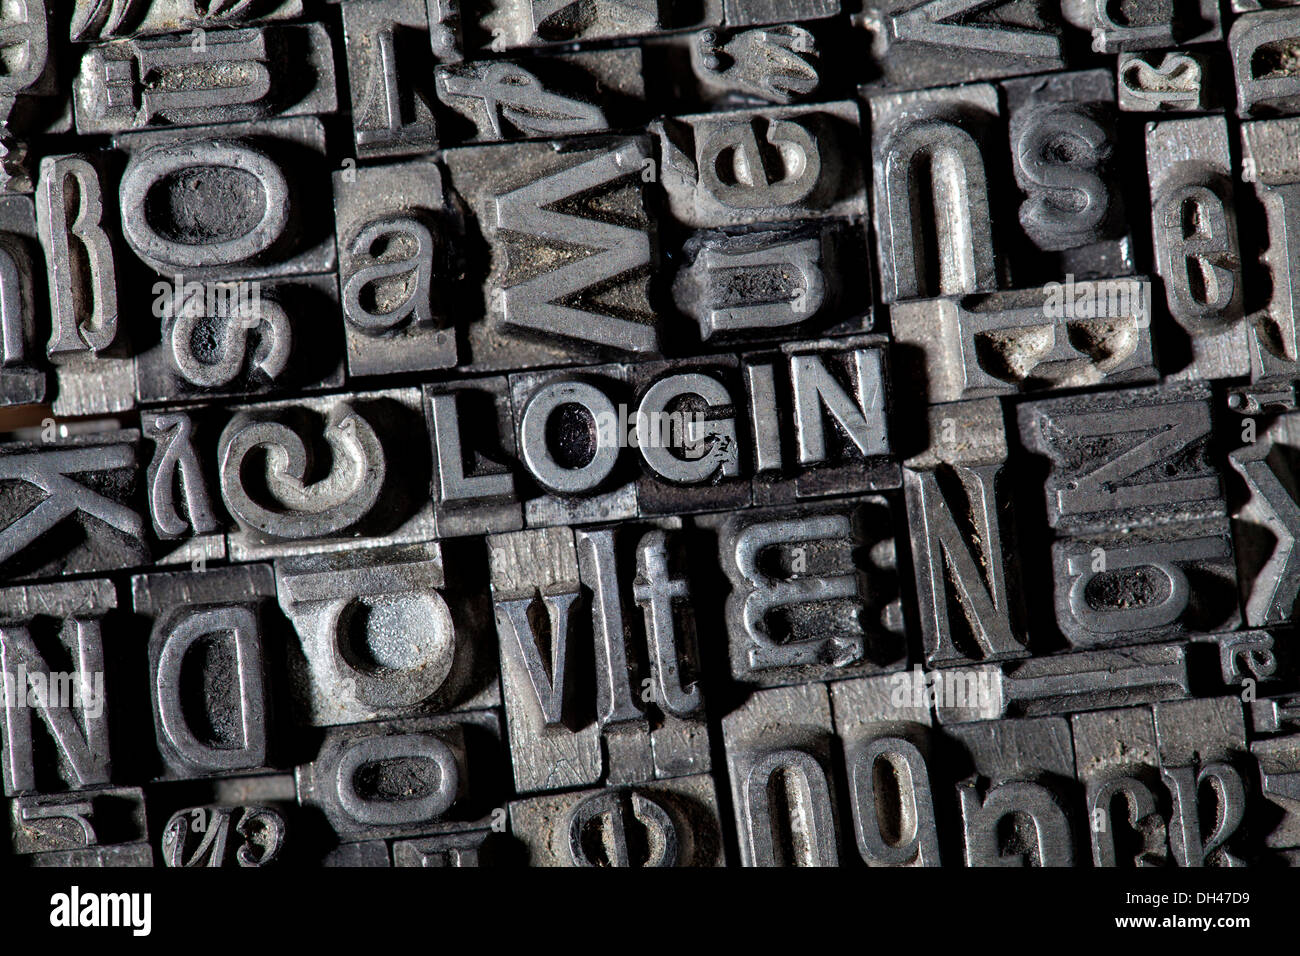 Cable viejo letras que forman la palabra 'Login' Foto de stock